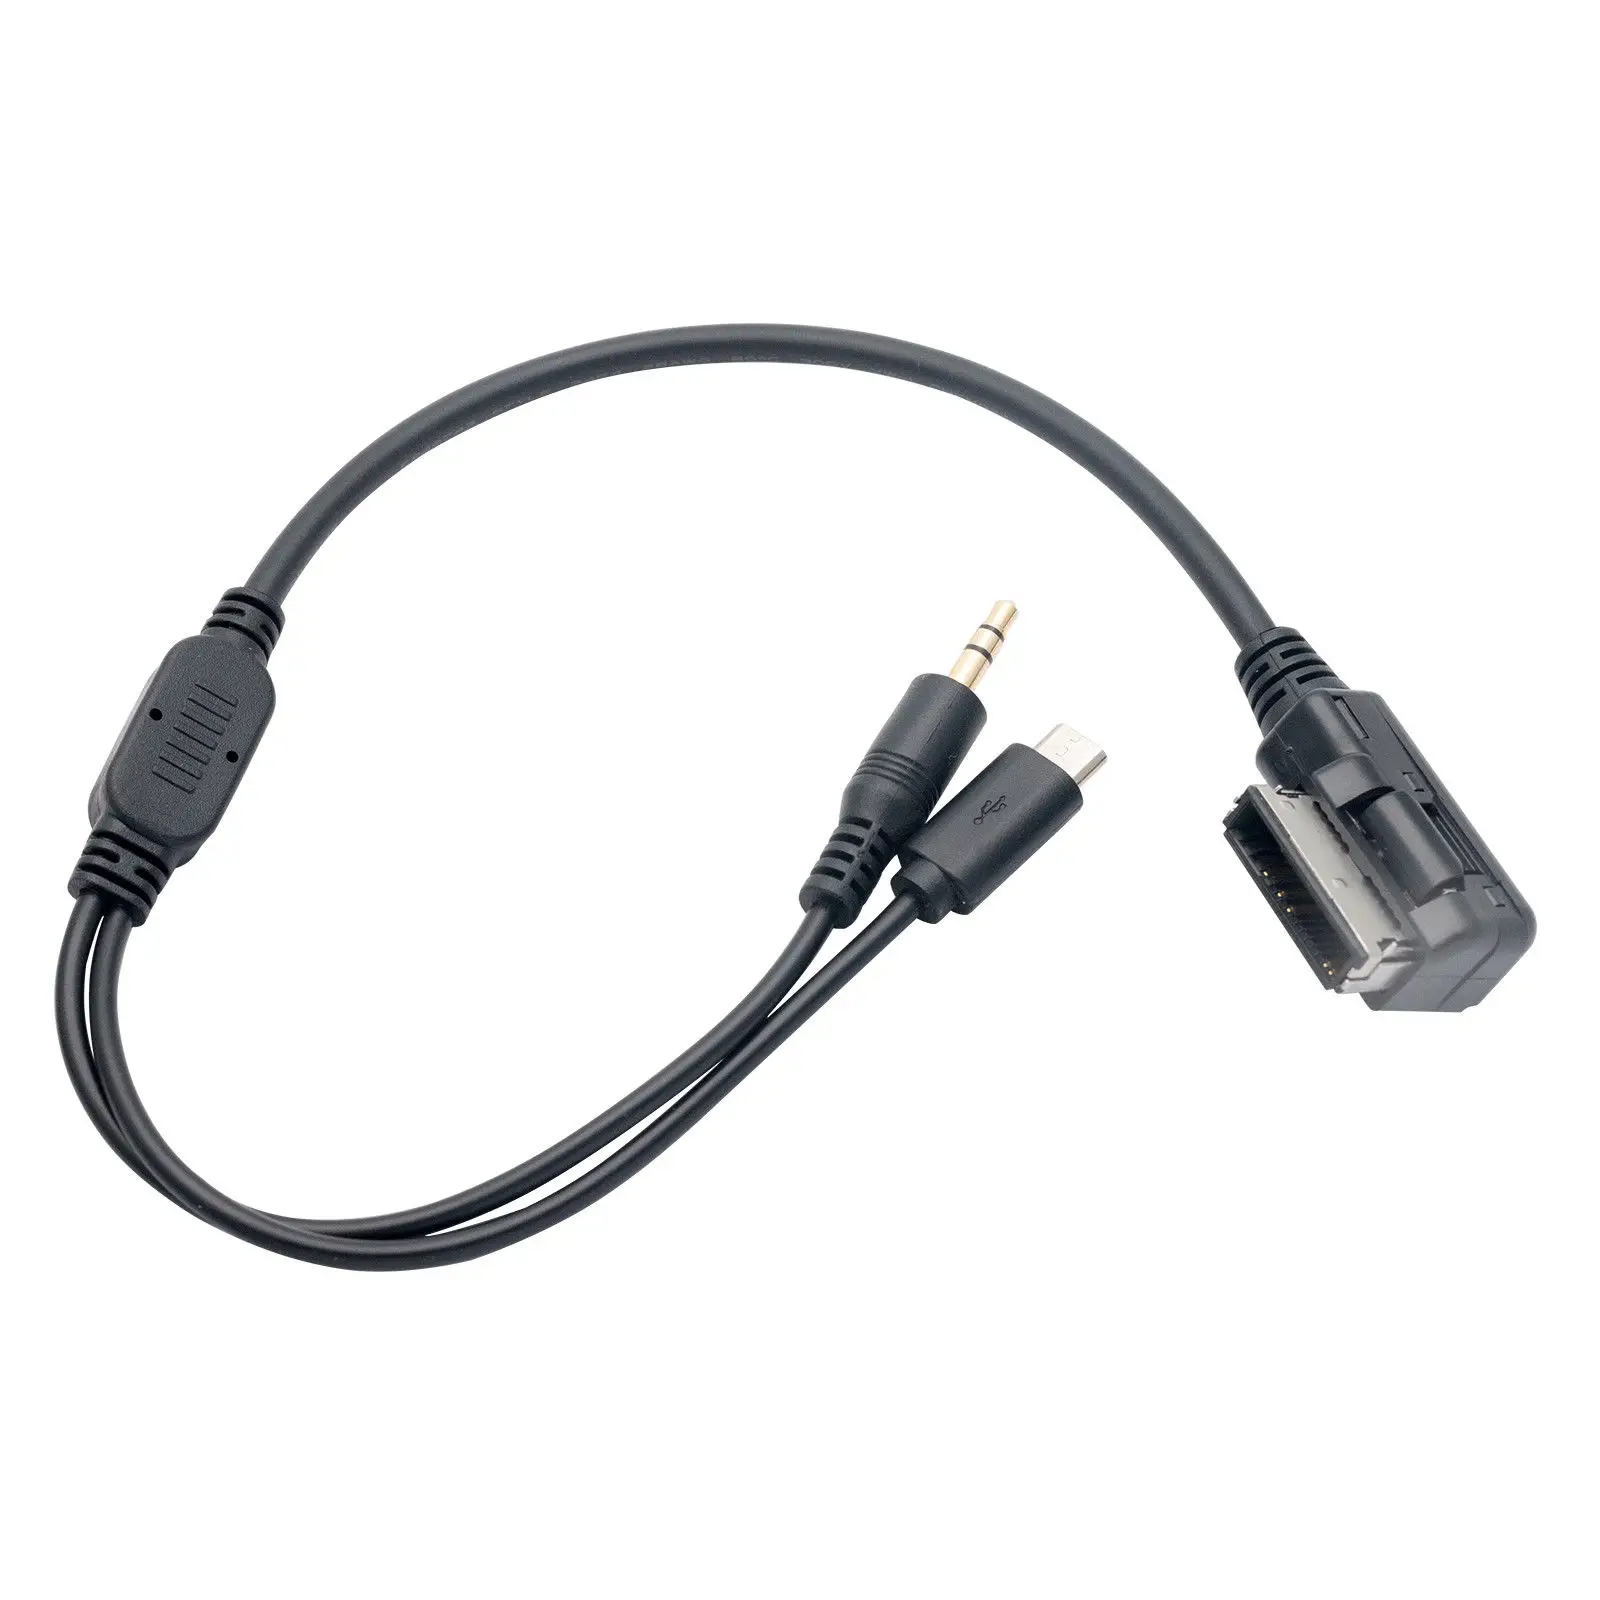 Ami MMI MDI автомобильный музыкальный интерфейс аудио AUX кабель адаптер для Android